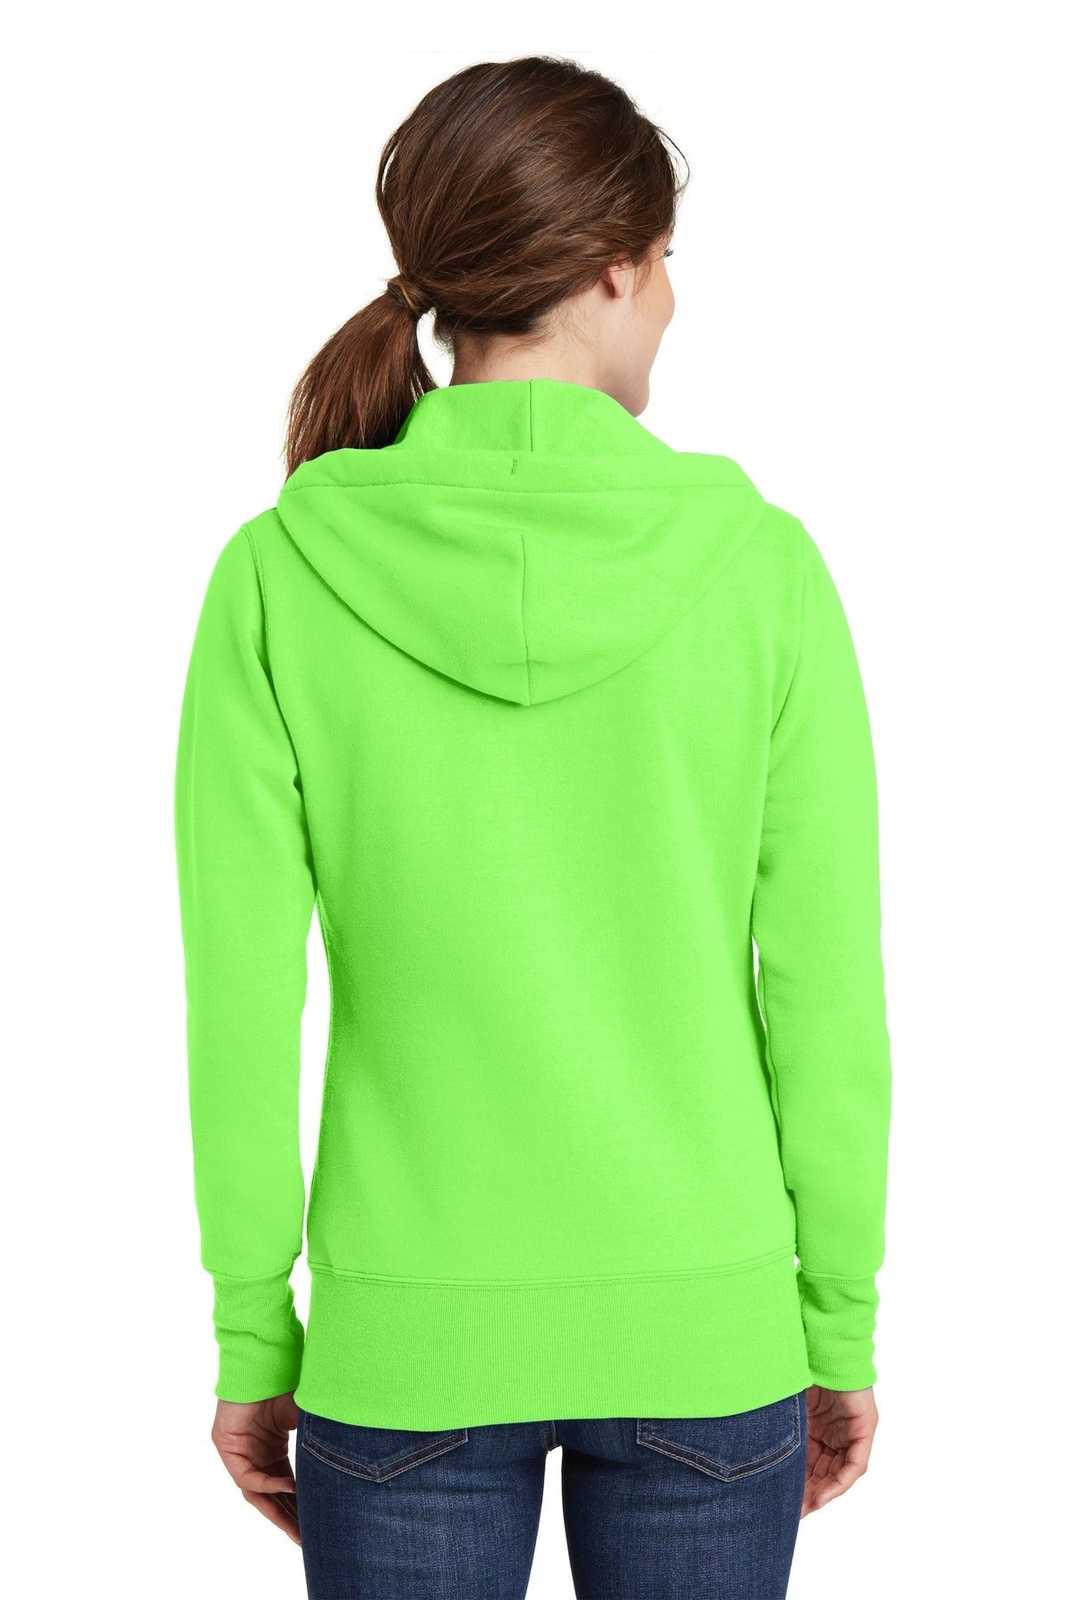 Port & Company LPC78ZH Ladies Core Fleece Full-Zip Hooded Sweatshirt - Neon Green - HIT a Double - 1